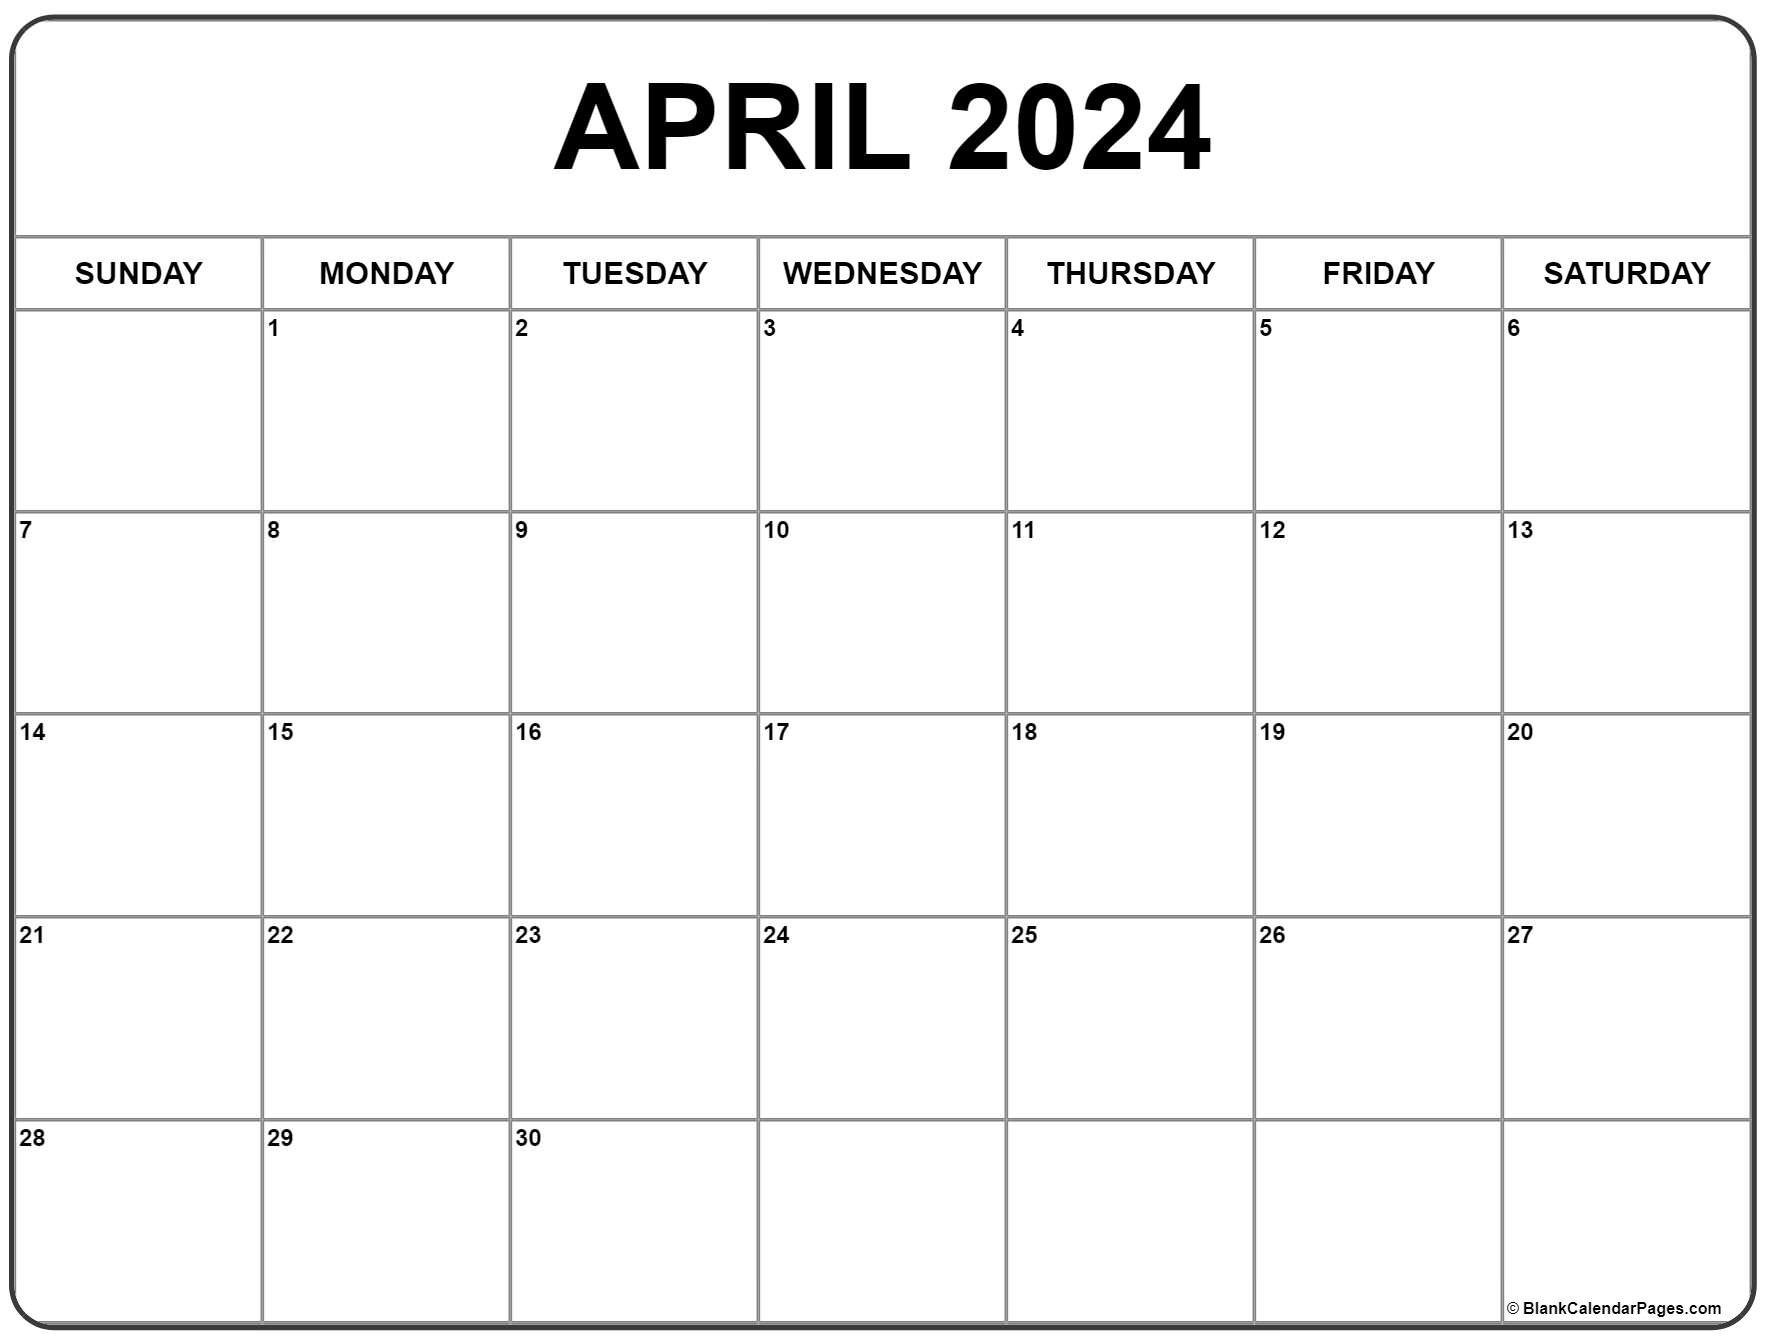 April 2024 Calendar | Free Printable Calendar for 2024 April Calendar Printable Free